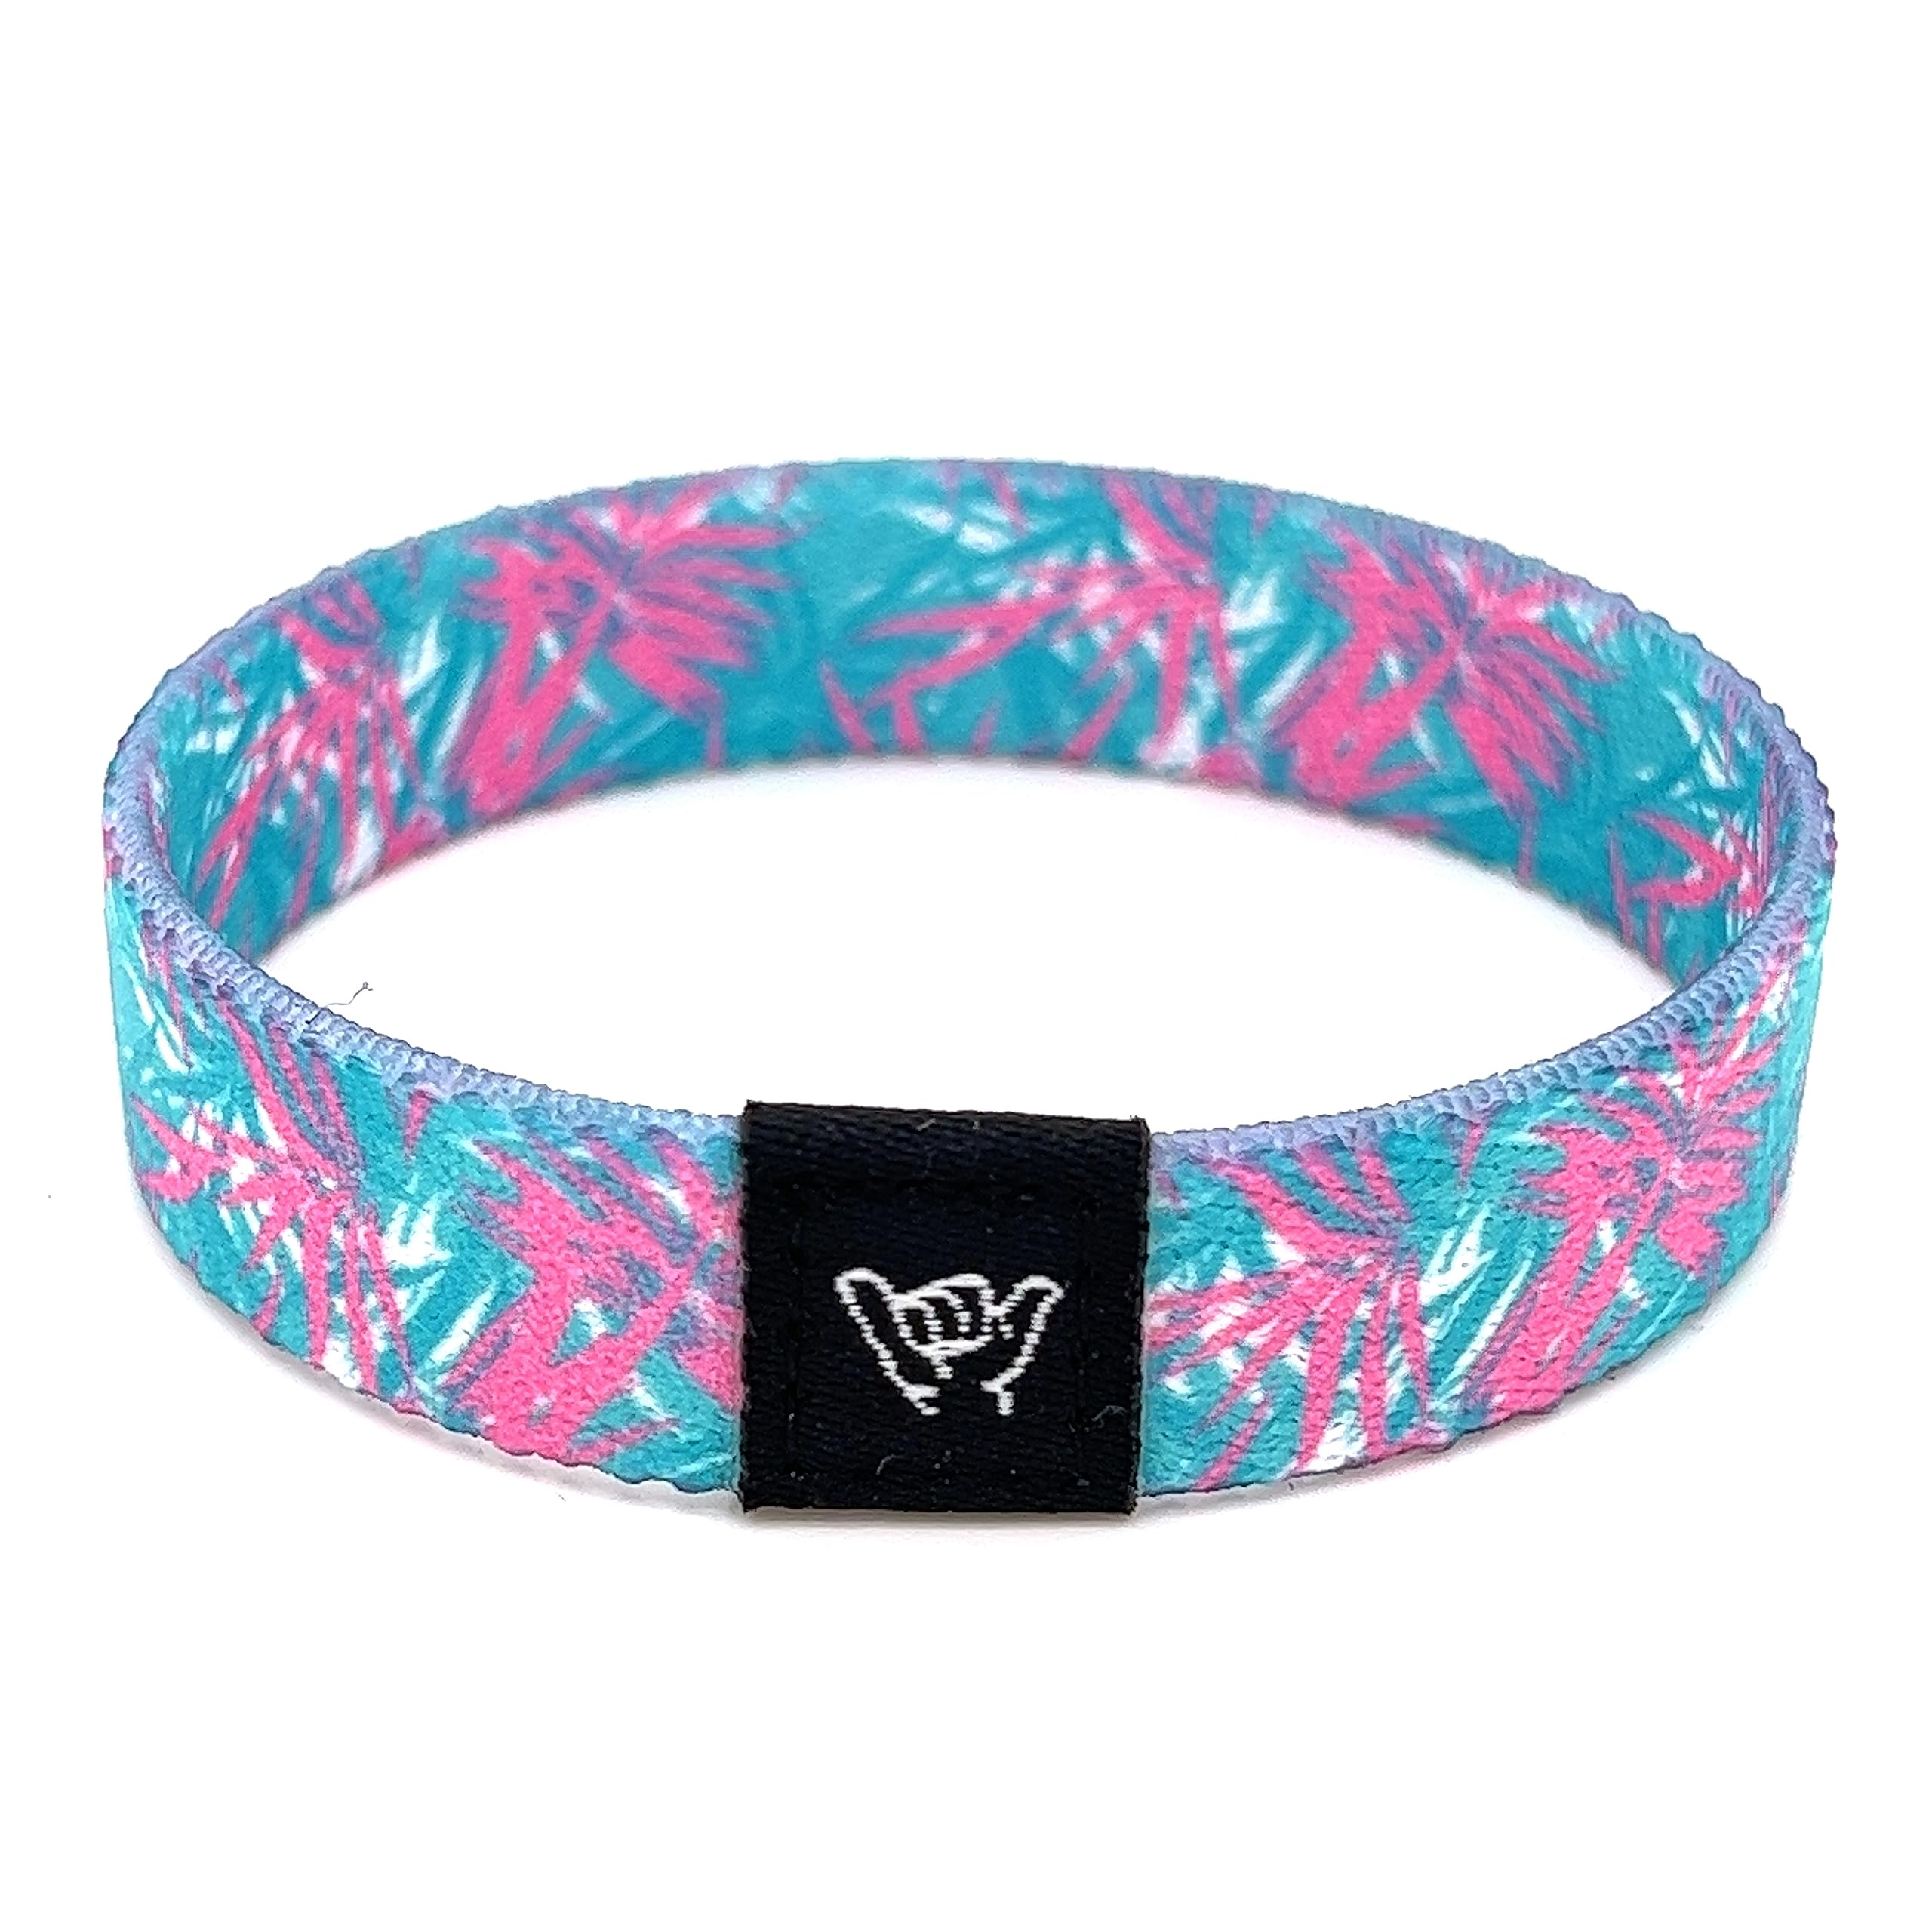 Hang Loose Bands Surfer Beach Bracelets, Christmas Gift for Men, Women & Teens - Stocking Stuffer - Boho Reversible Wristband - 